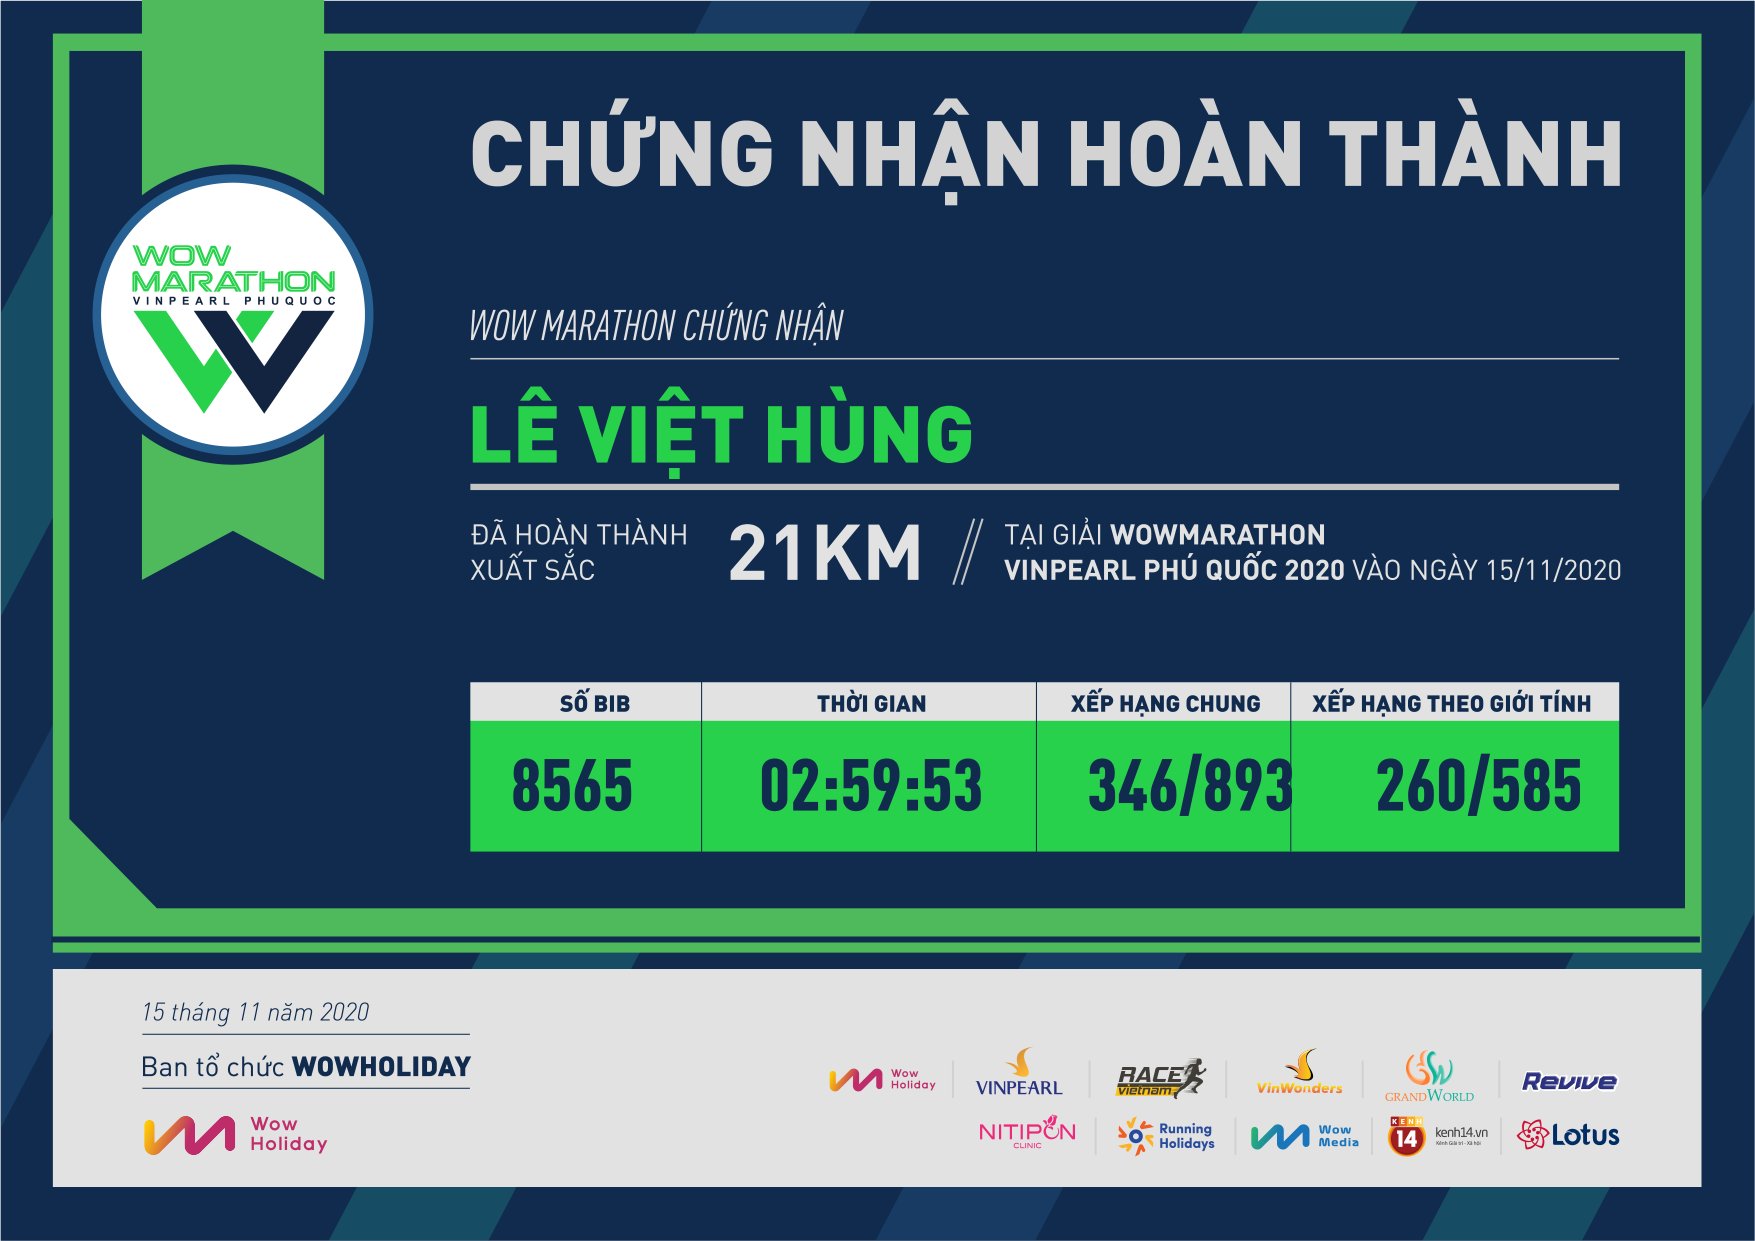 8565 - Lê Việt Hùng